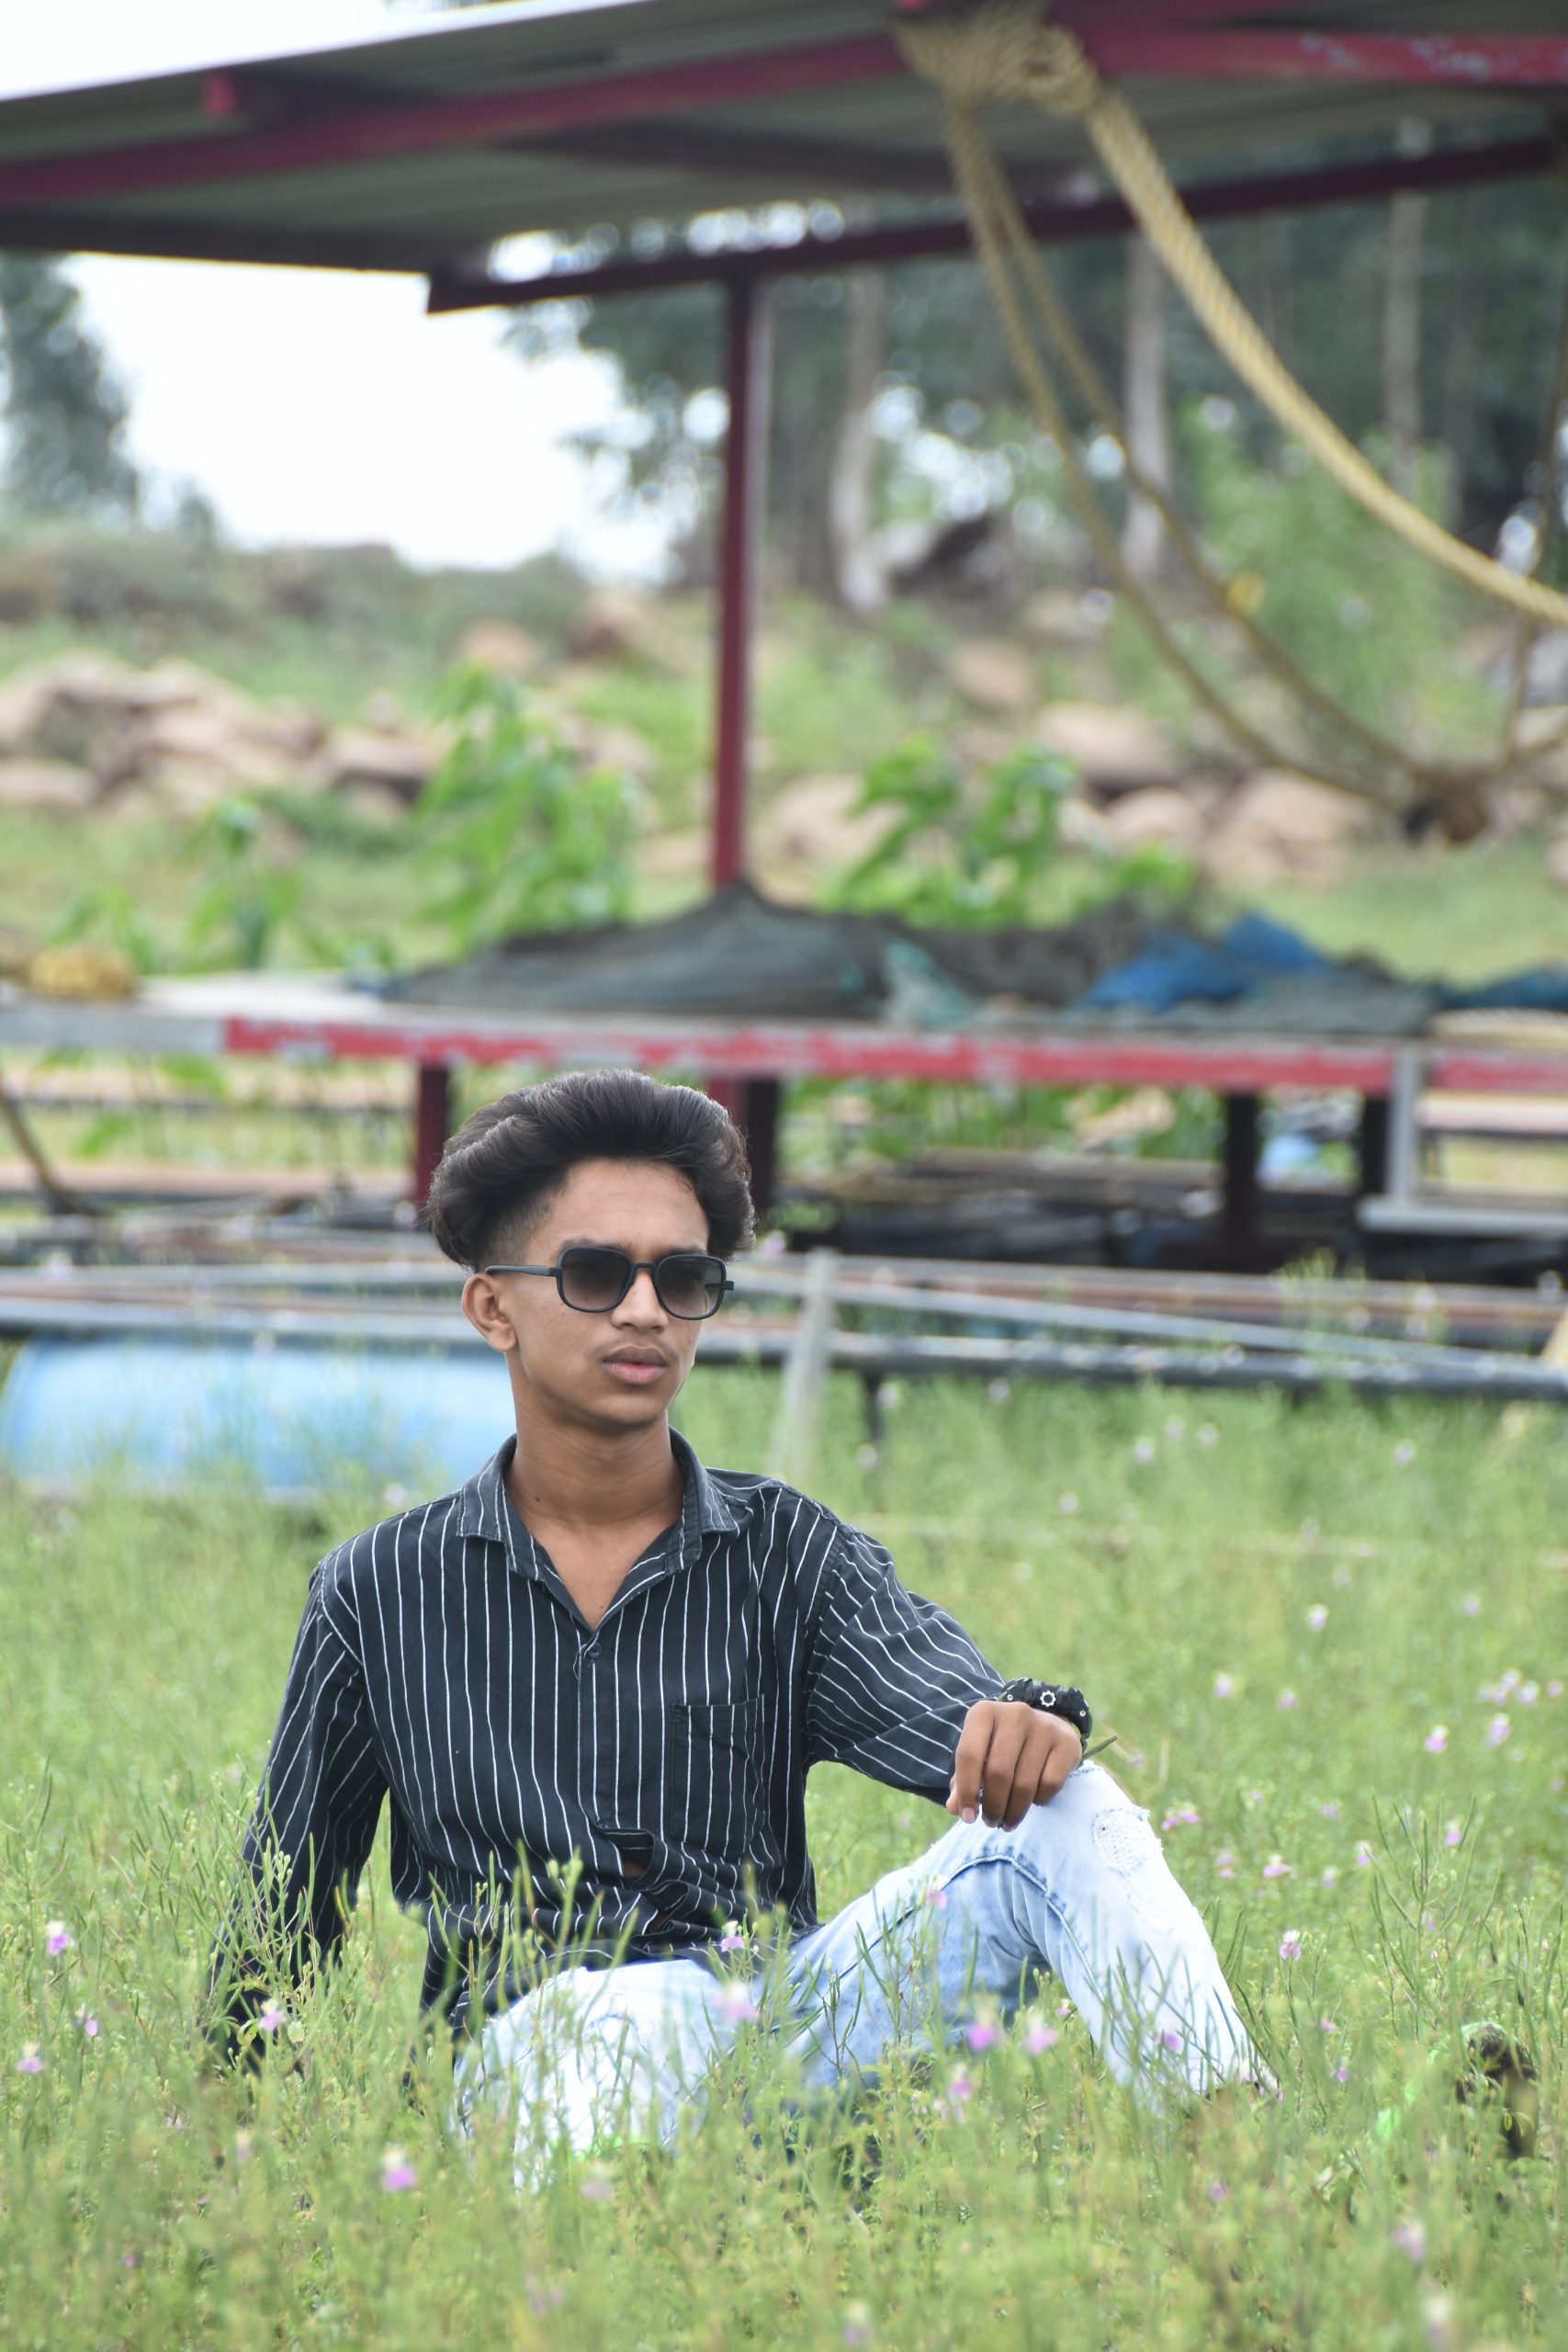 Boy posing in the grassy farm